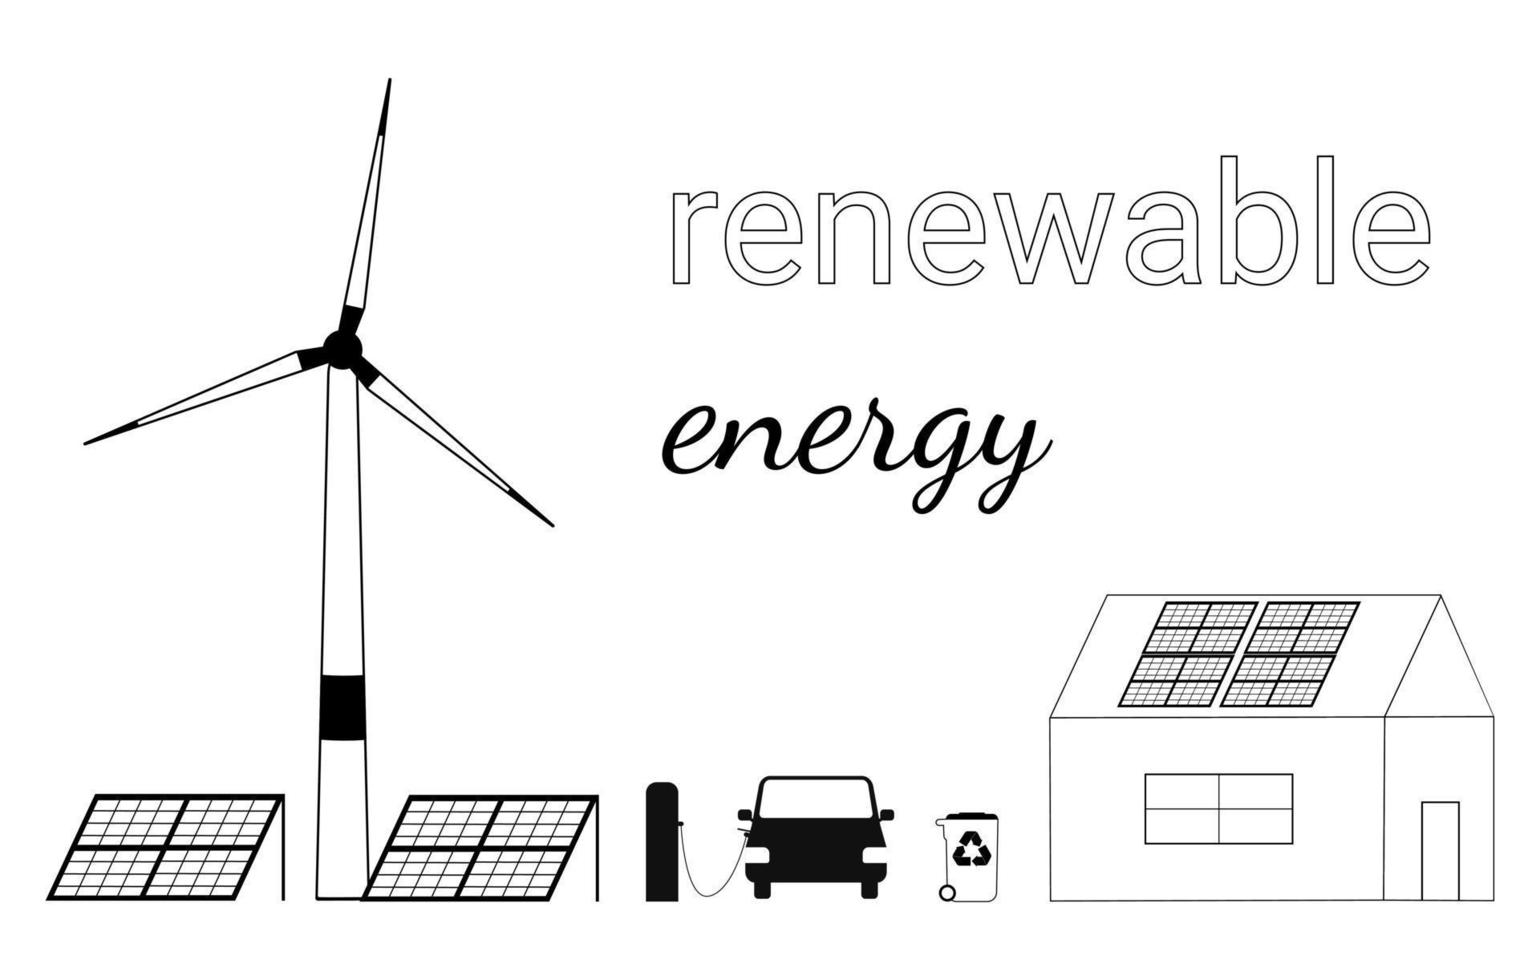 conjunto de ilustraciones dibujadas a mano que muestran cómo utilizar fuentes de energía renovables. molino de viento, paneles solares y un coche a batería. bosquejo del garabato. ilustración vectorial vector